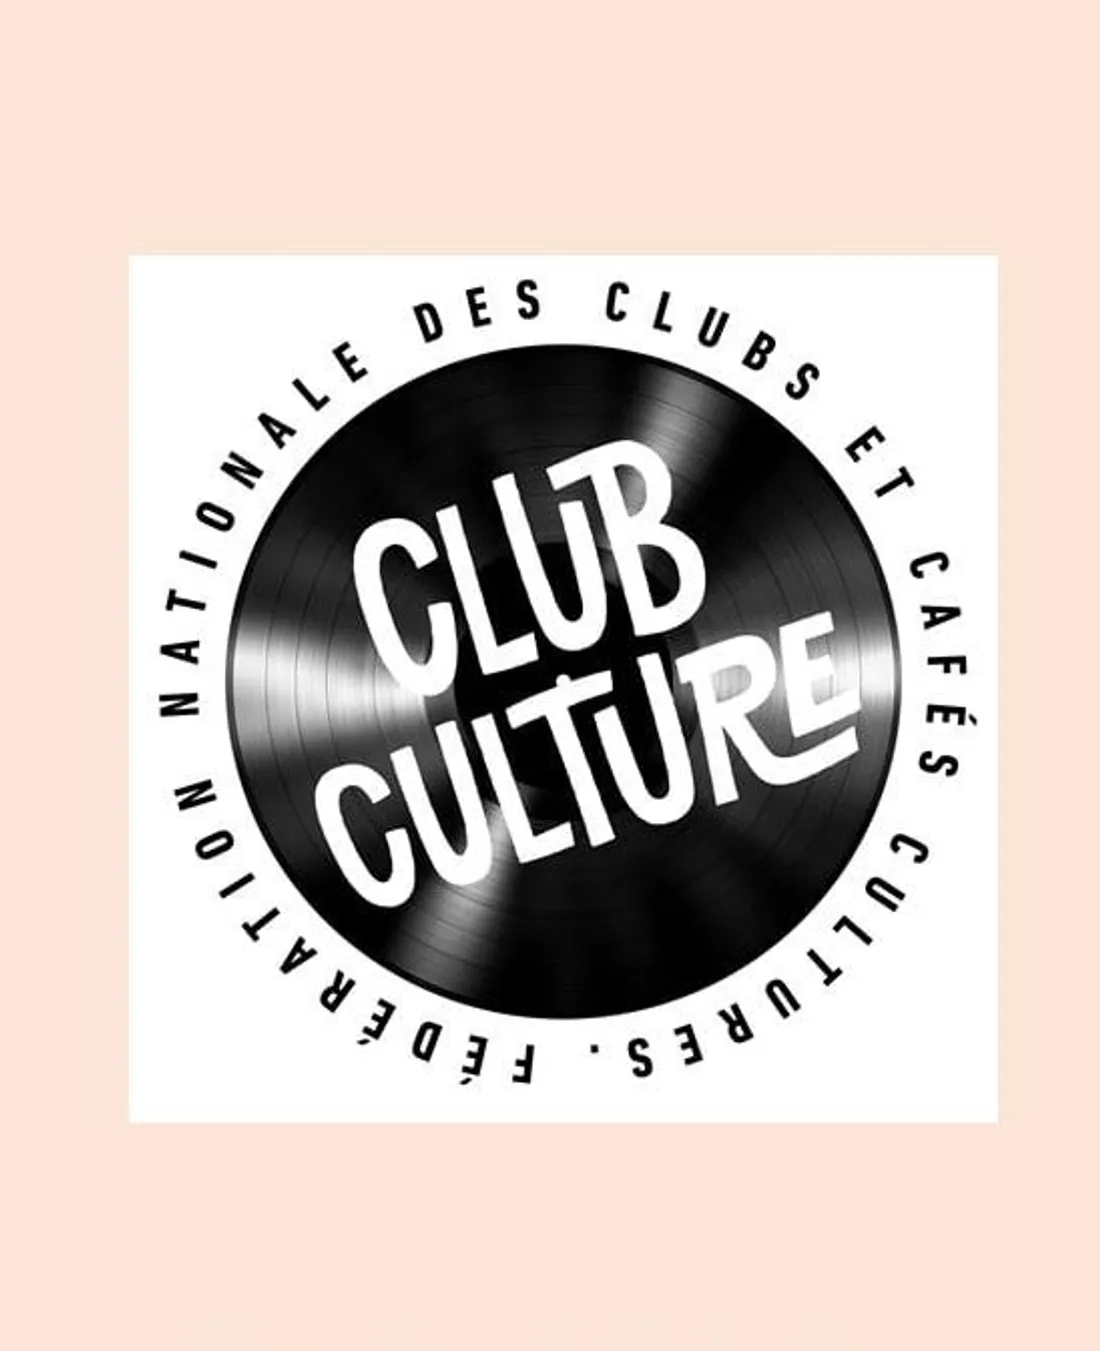 Club culture